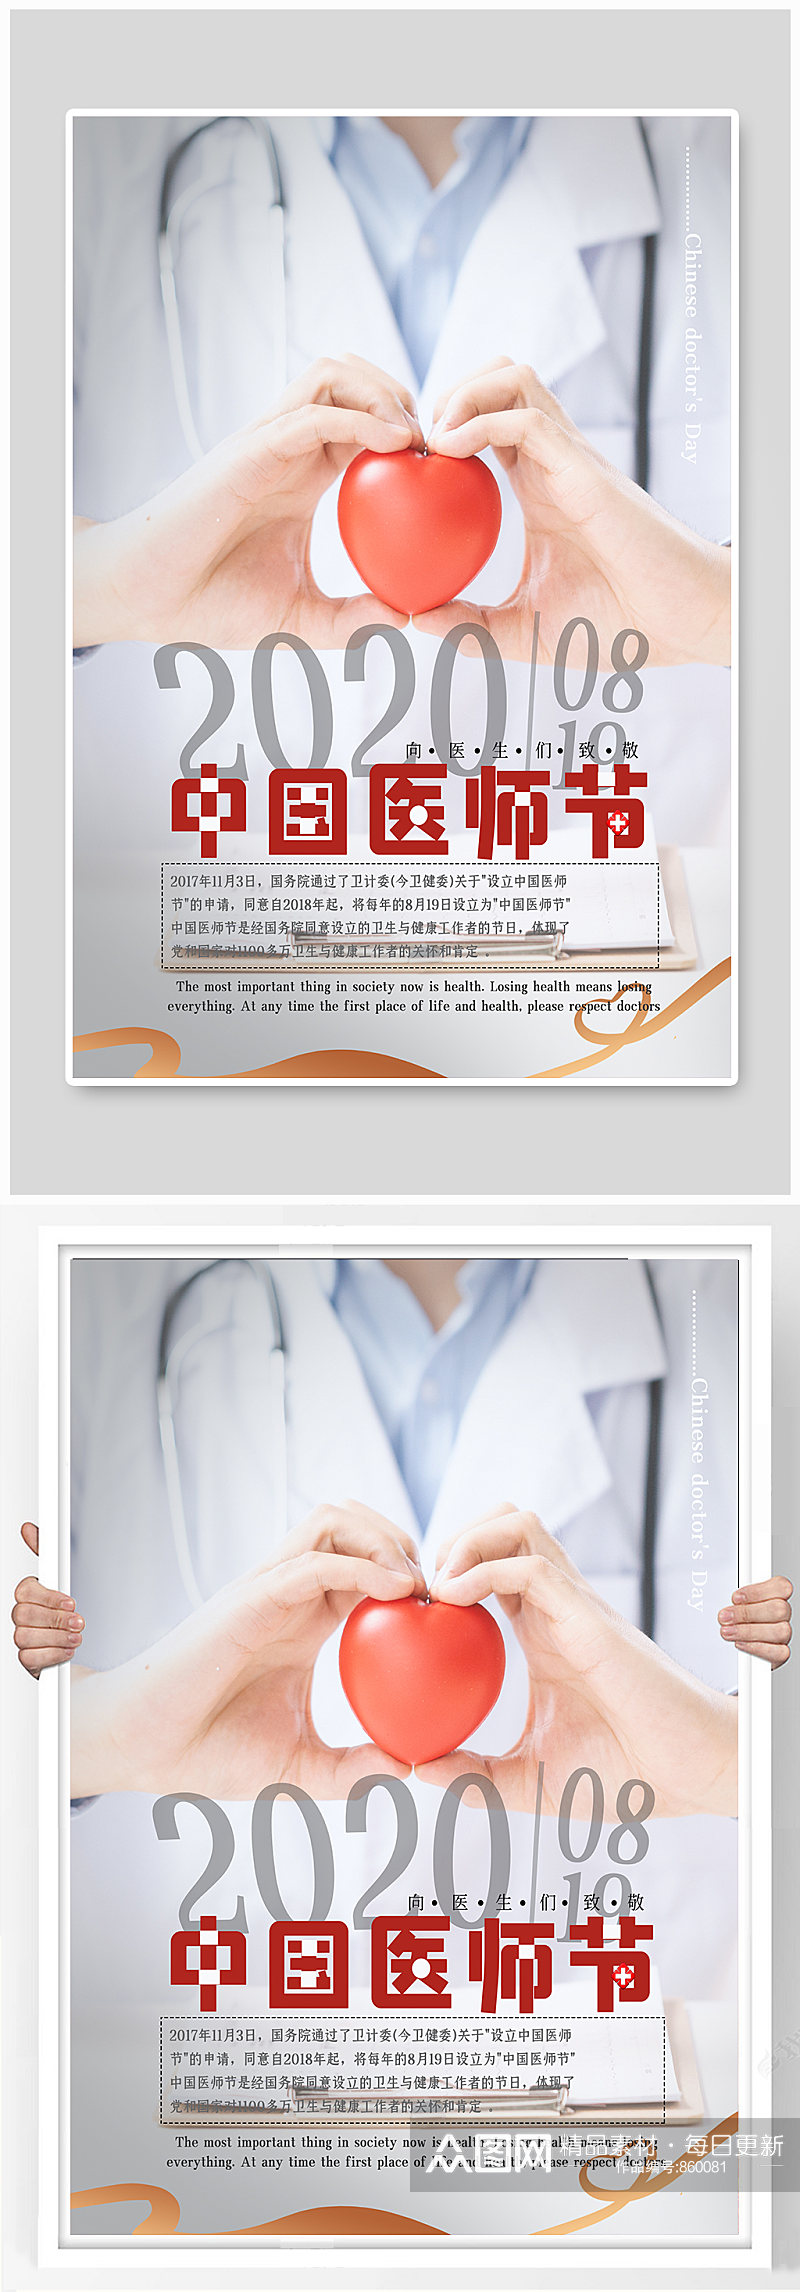 中国医师节公益致敬活动海报 展板素材